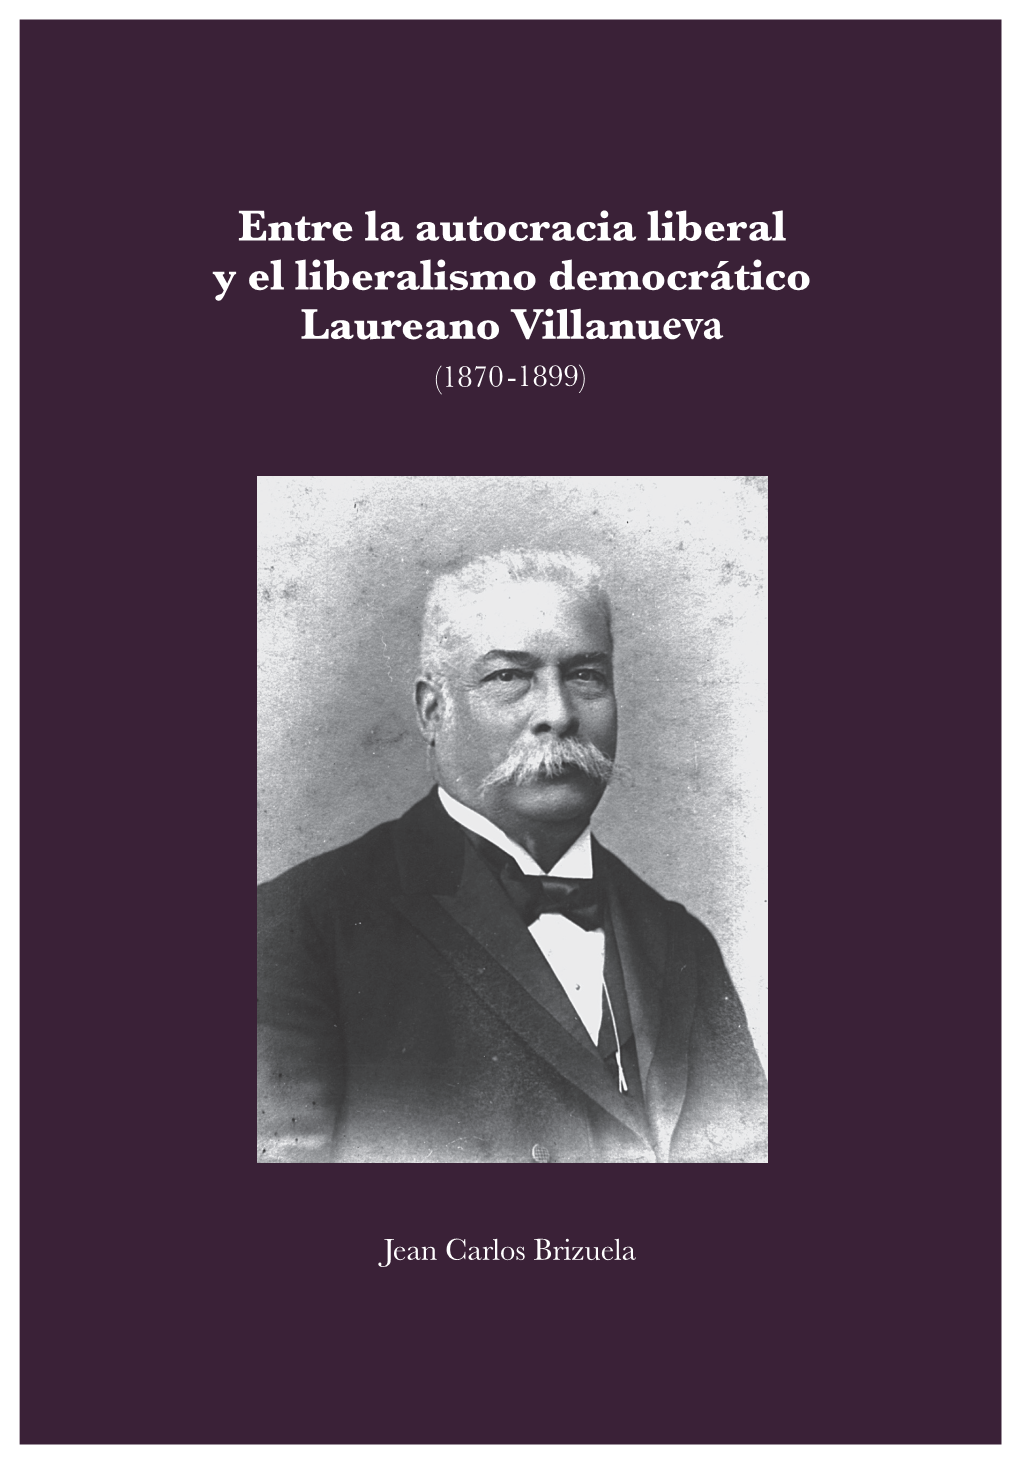 Libro Laureano Villanueva